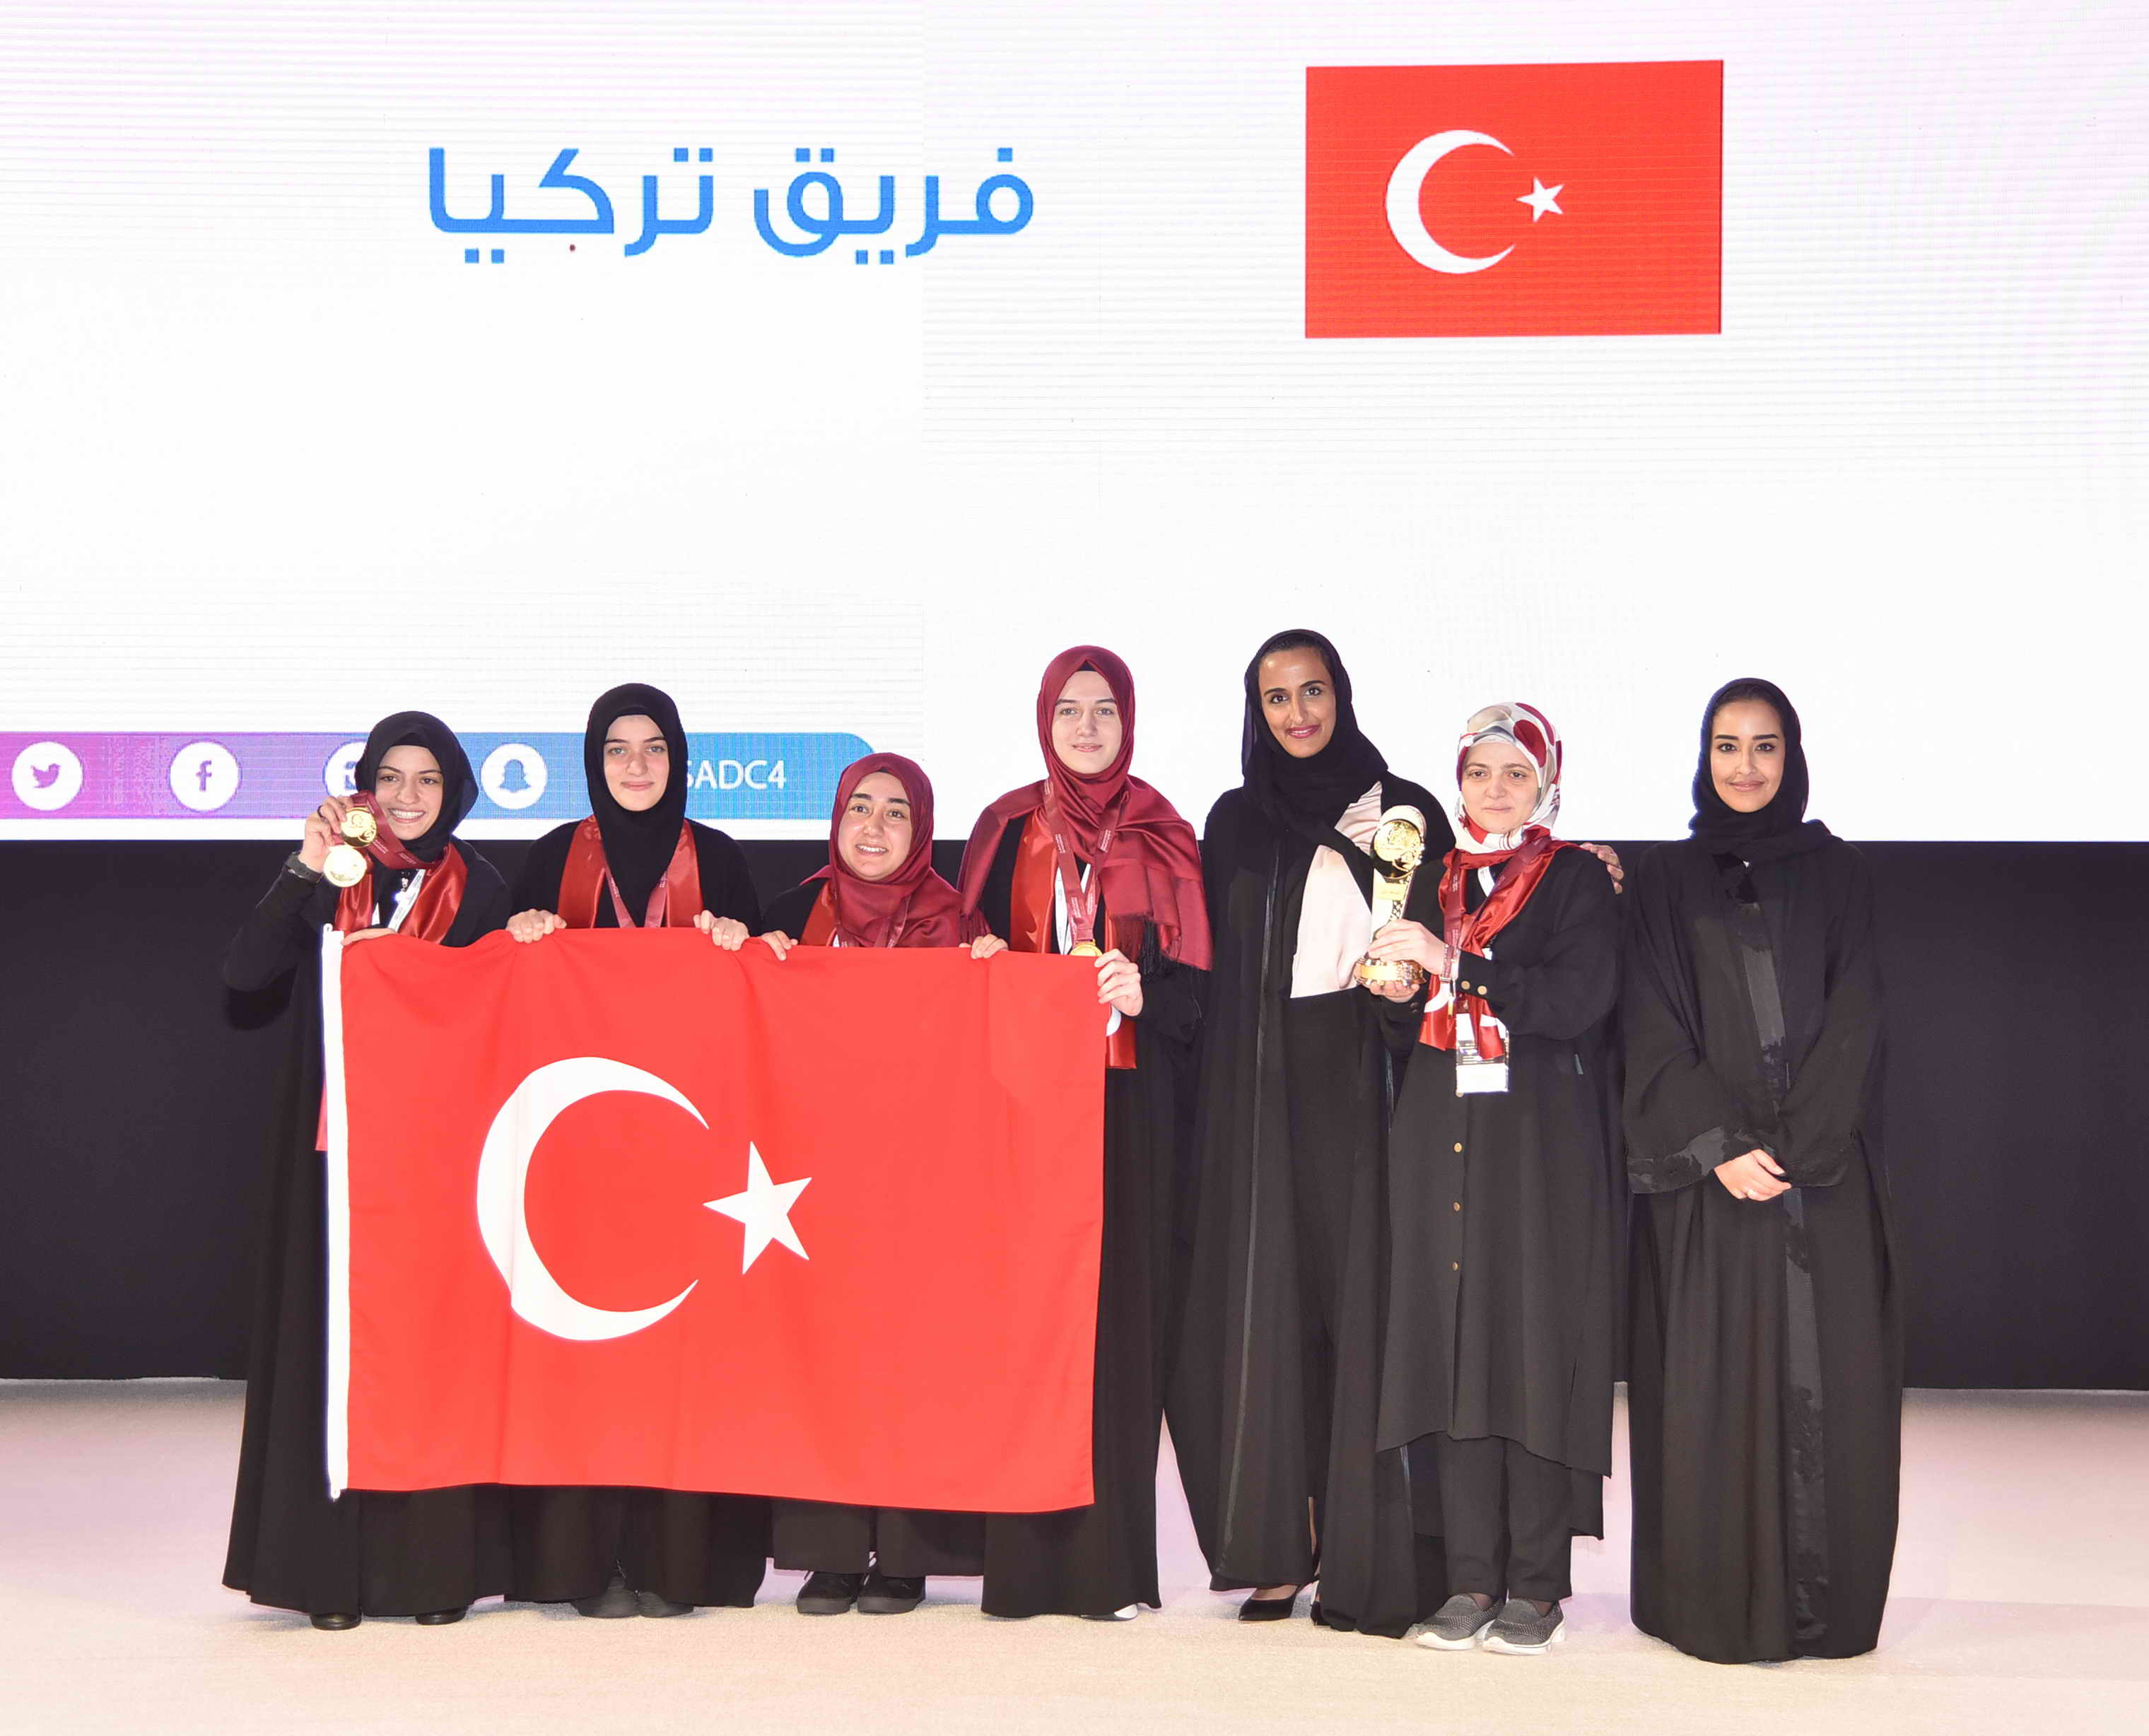 فريق الجمهورية التركية حامل لقب البطولة الدولية الرابعة لمناظرات المدارس باللغة العربية